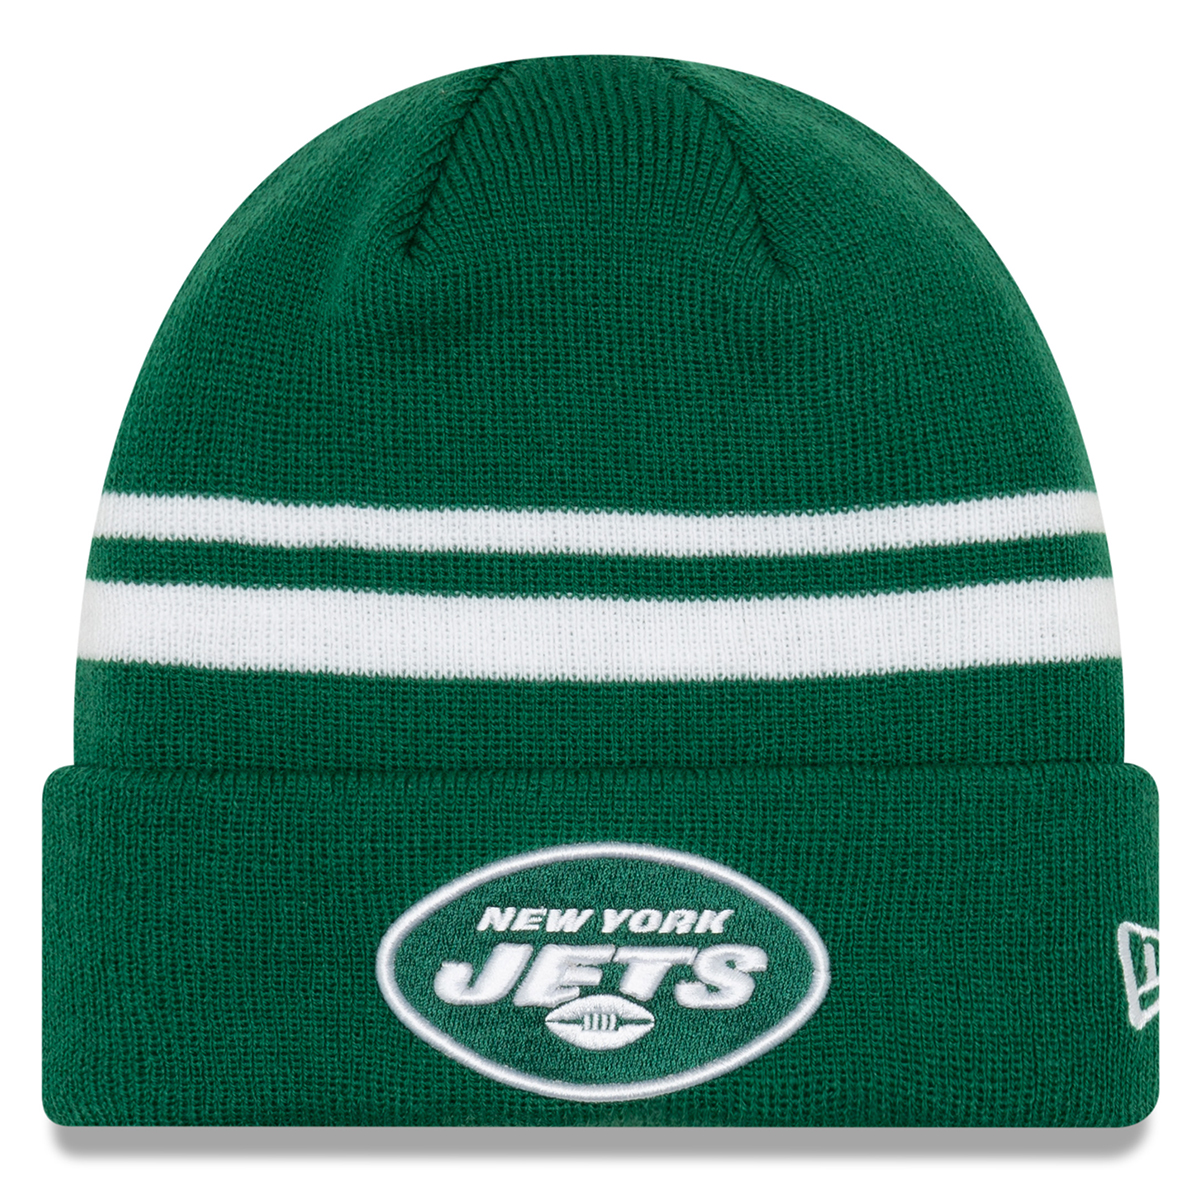 New York Jets Men's New Era Cuffed Knit Hat